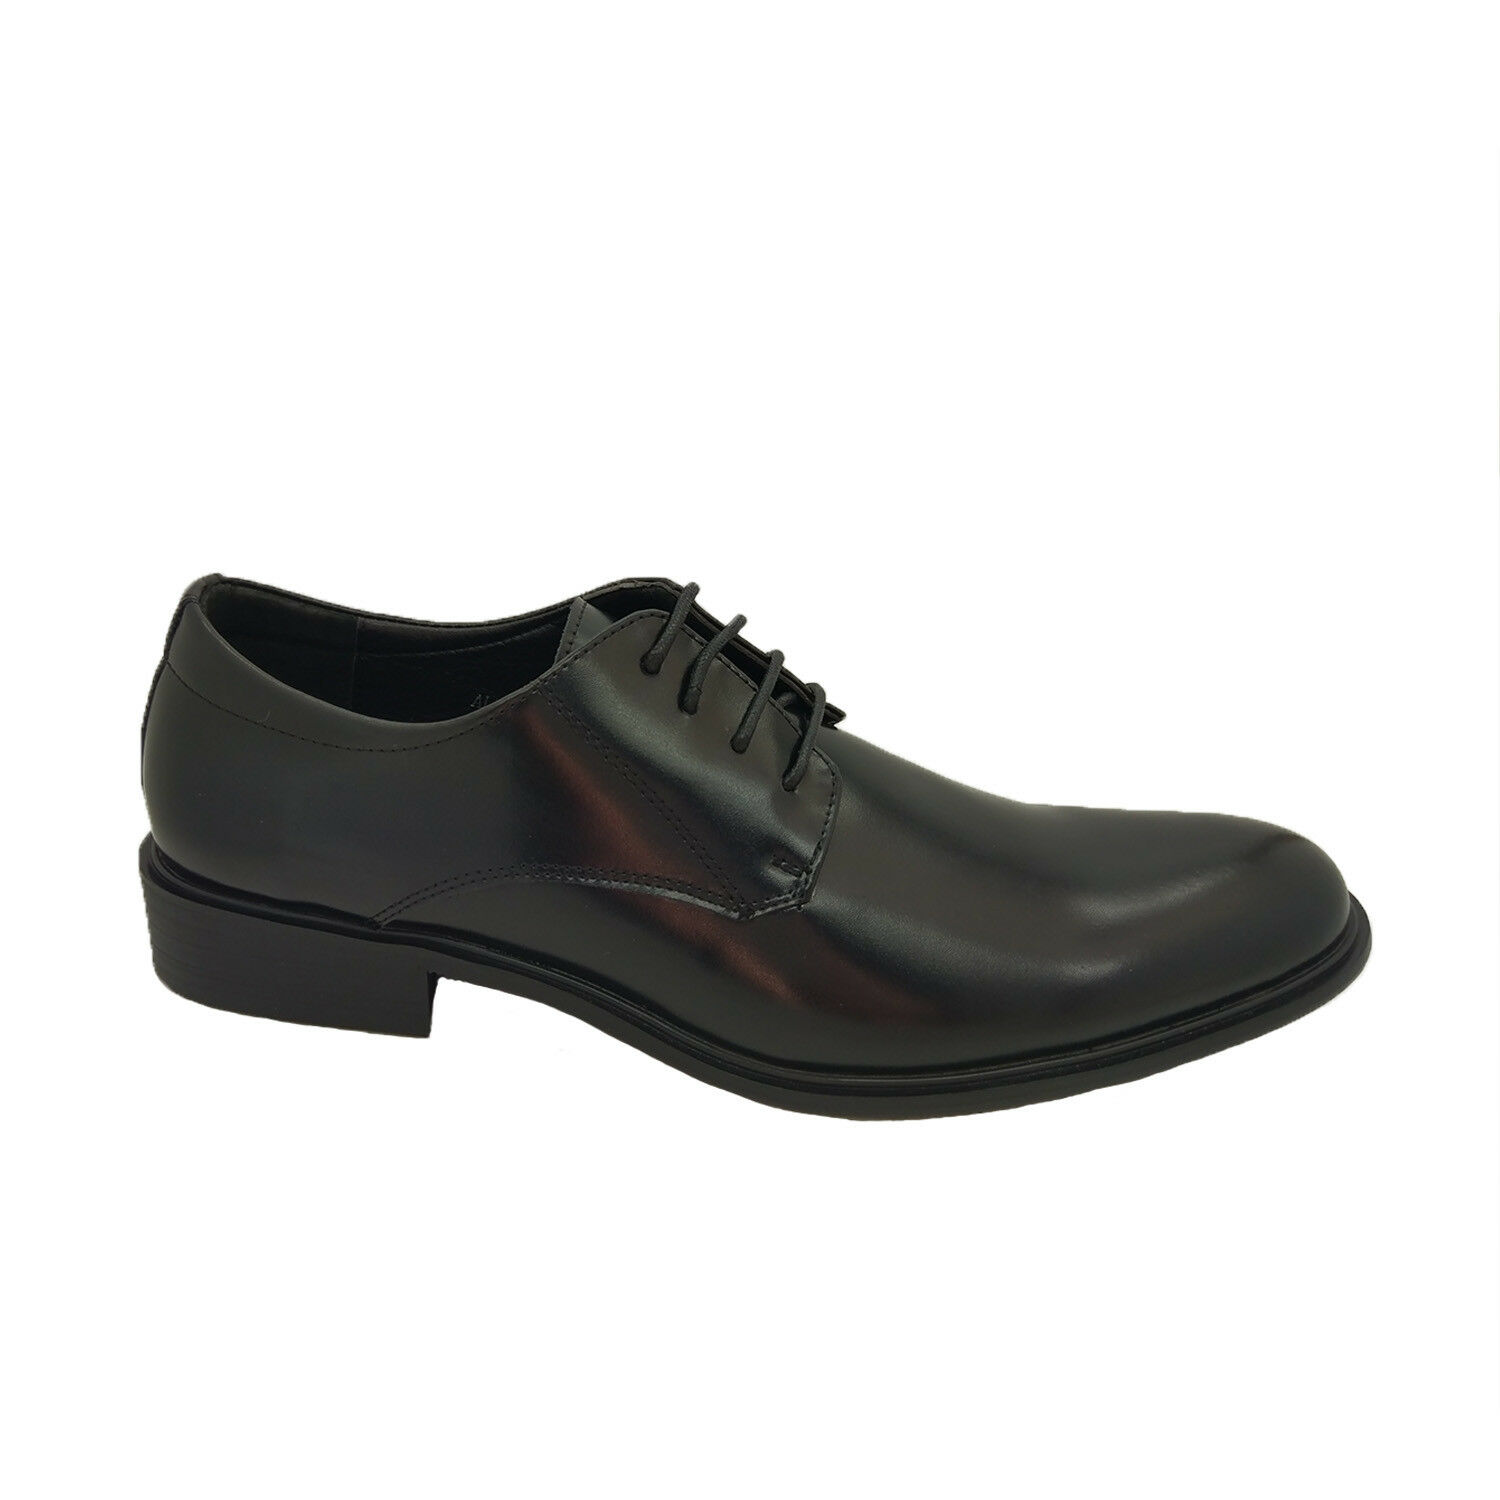 Mens Shoes Borelli Alex Lace Up Black Leather Formal Dress Shoe AU 6-13 |  eBay